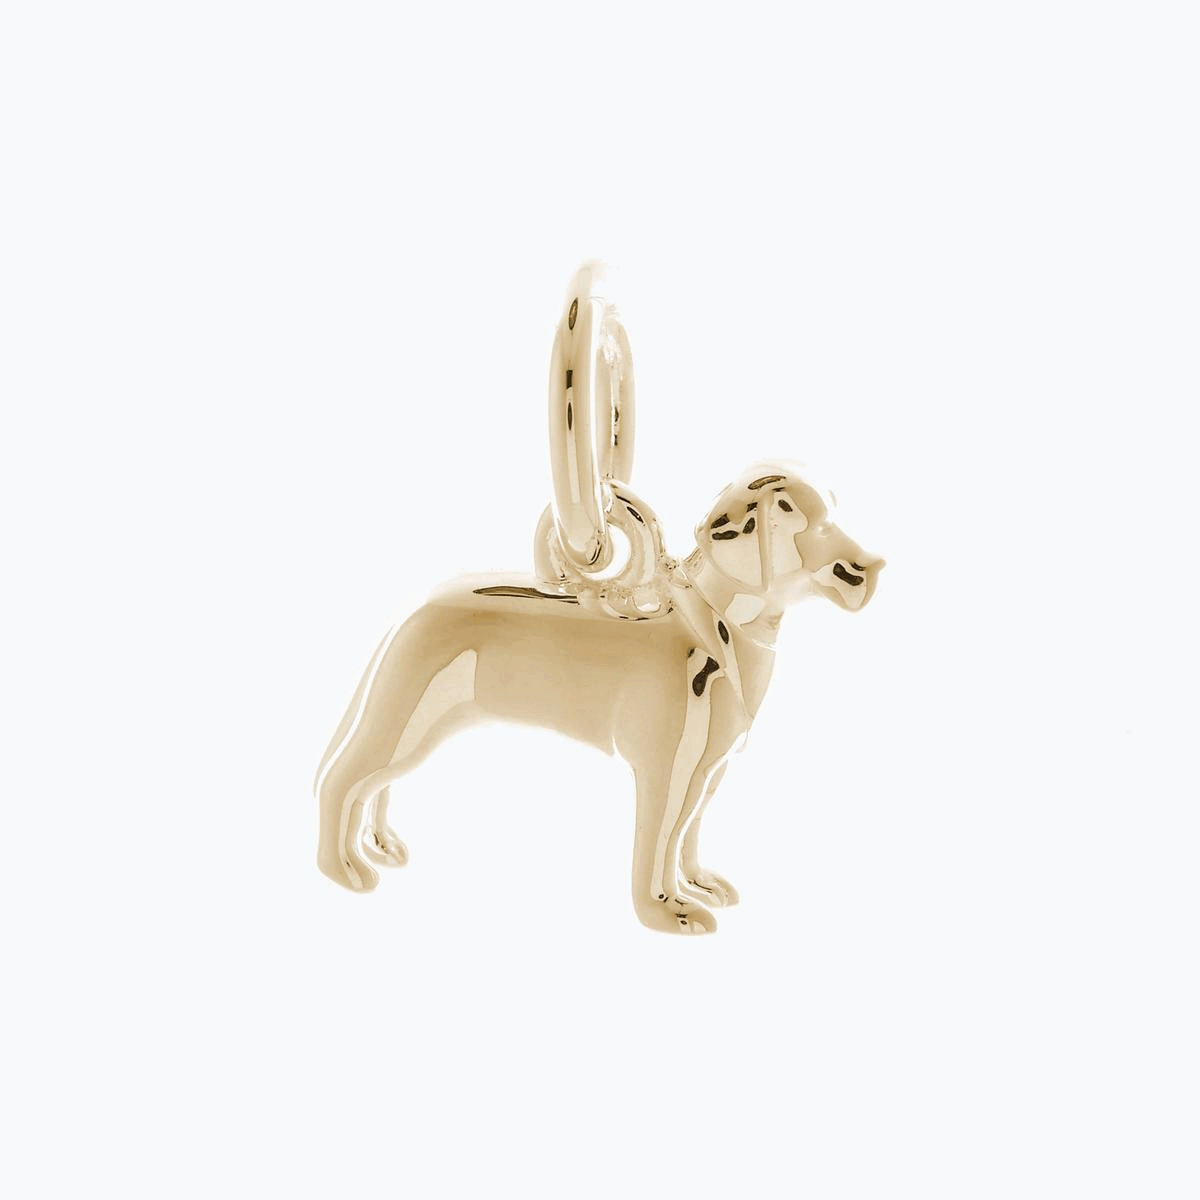 solid gold labrador dog charm for bracelet or necklace